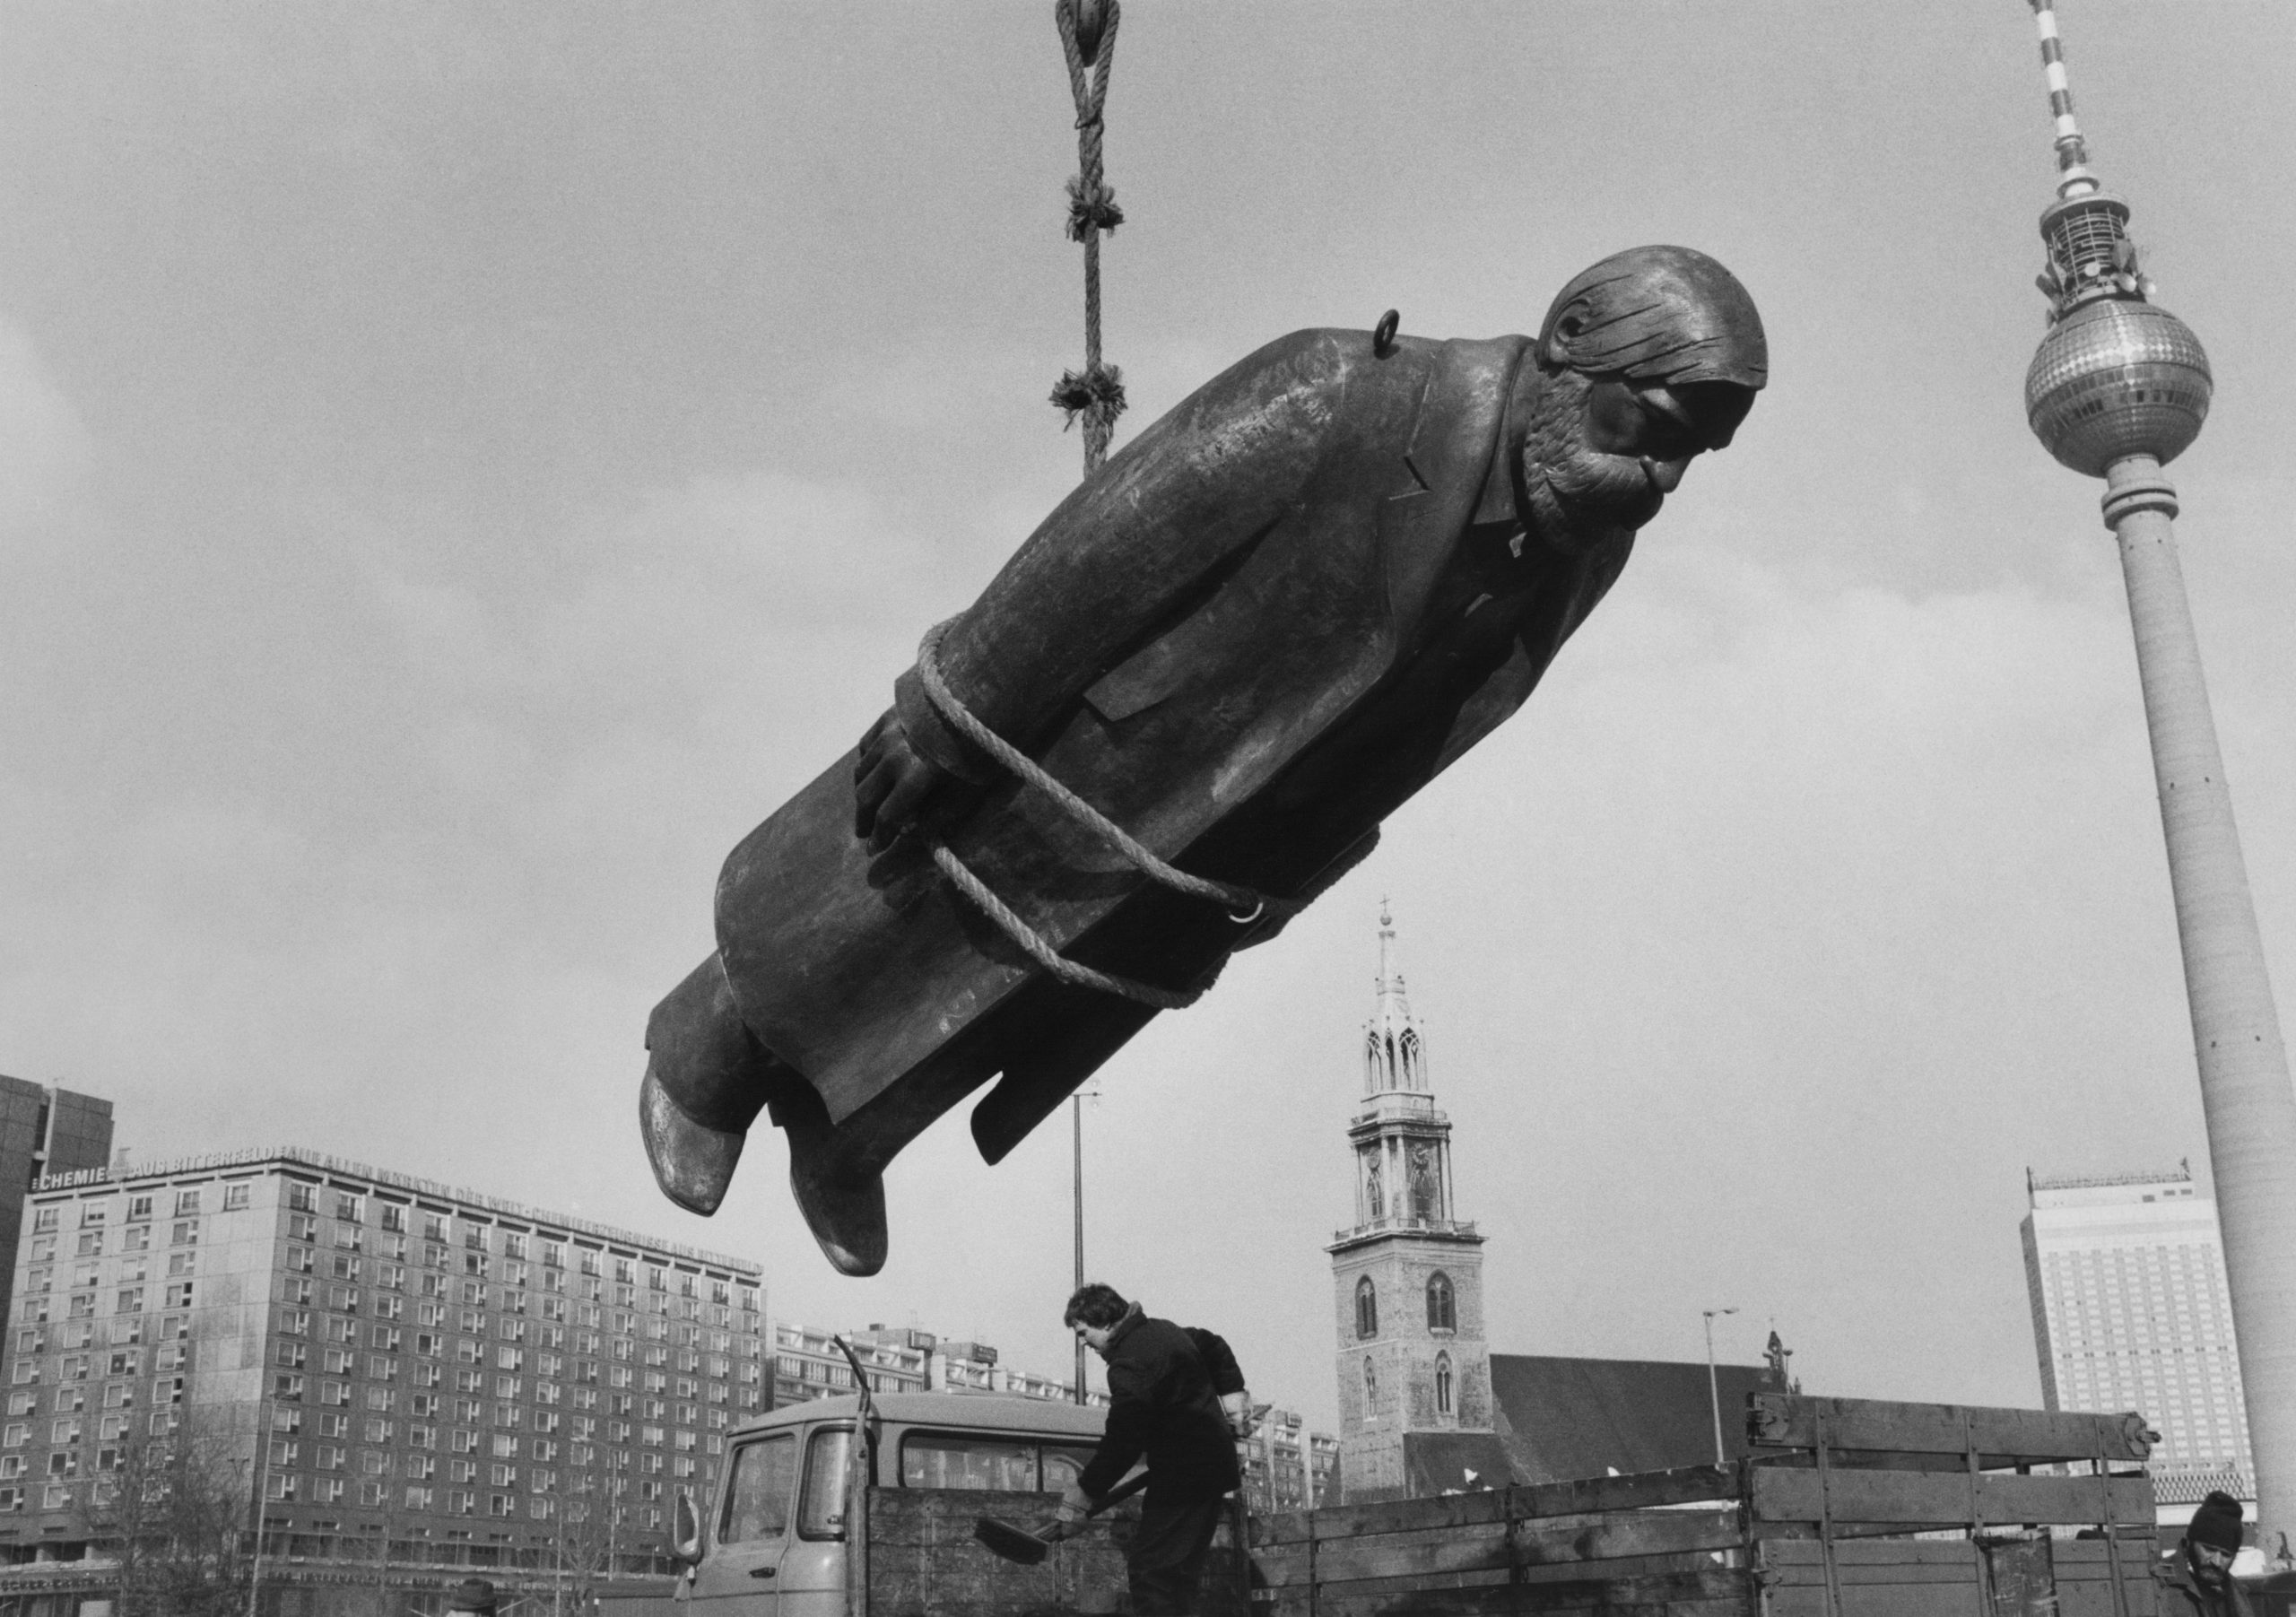 Sibylle Bergemann, Das Denkmal, Berlin, Februar 1986 © Estate Sibylle Bergemann/OSTKREUZ. Courtesy Loock Galerie, Berlin